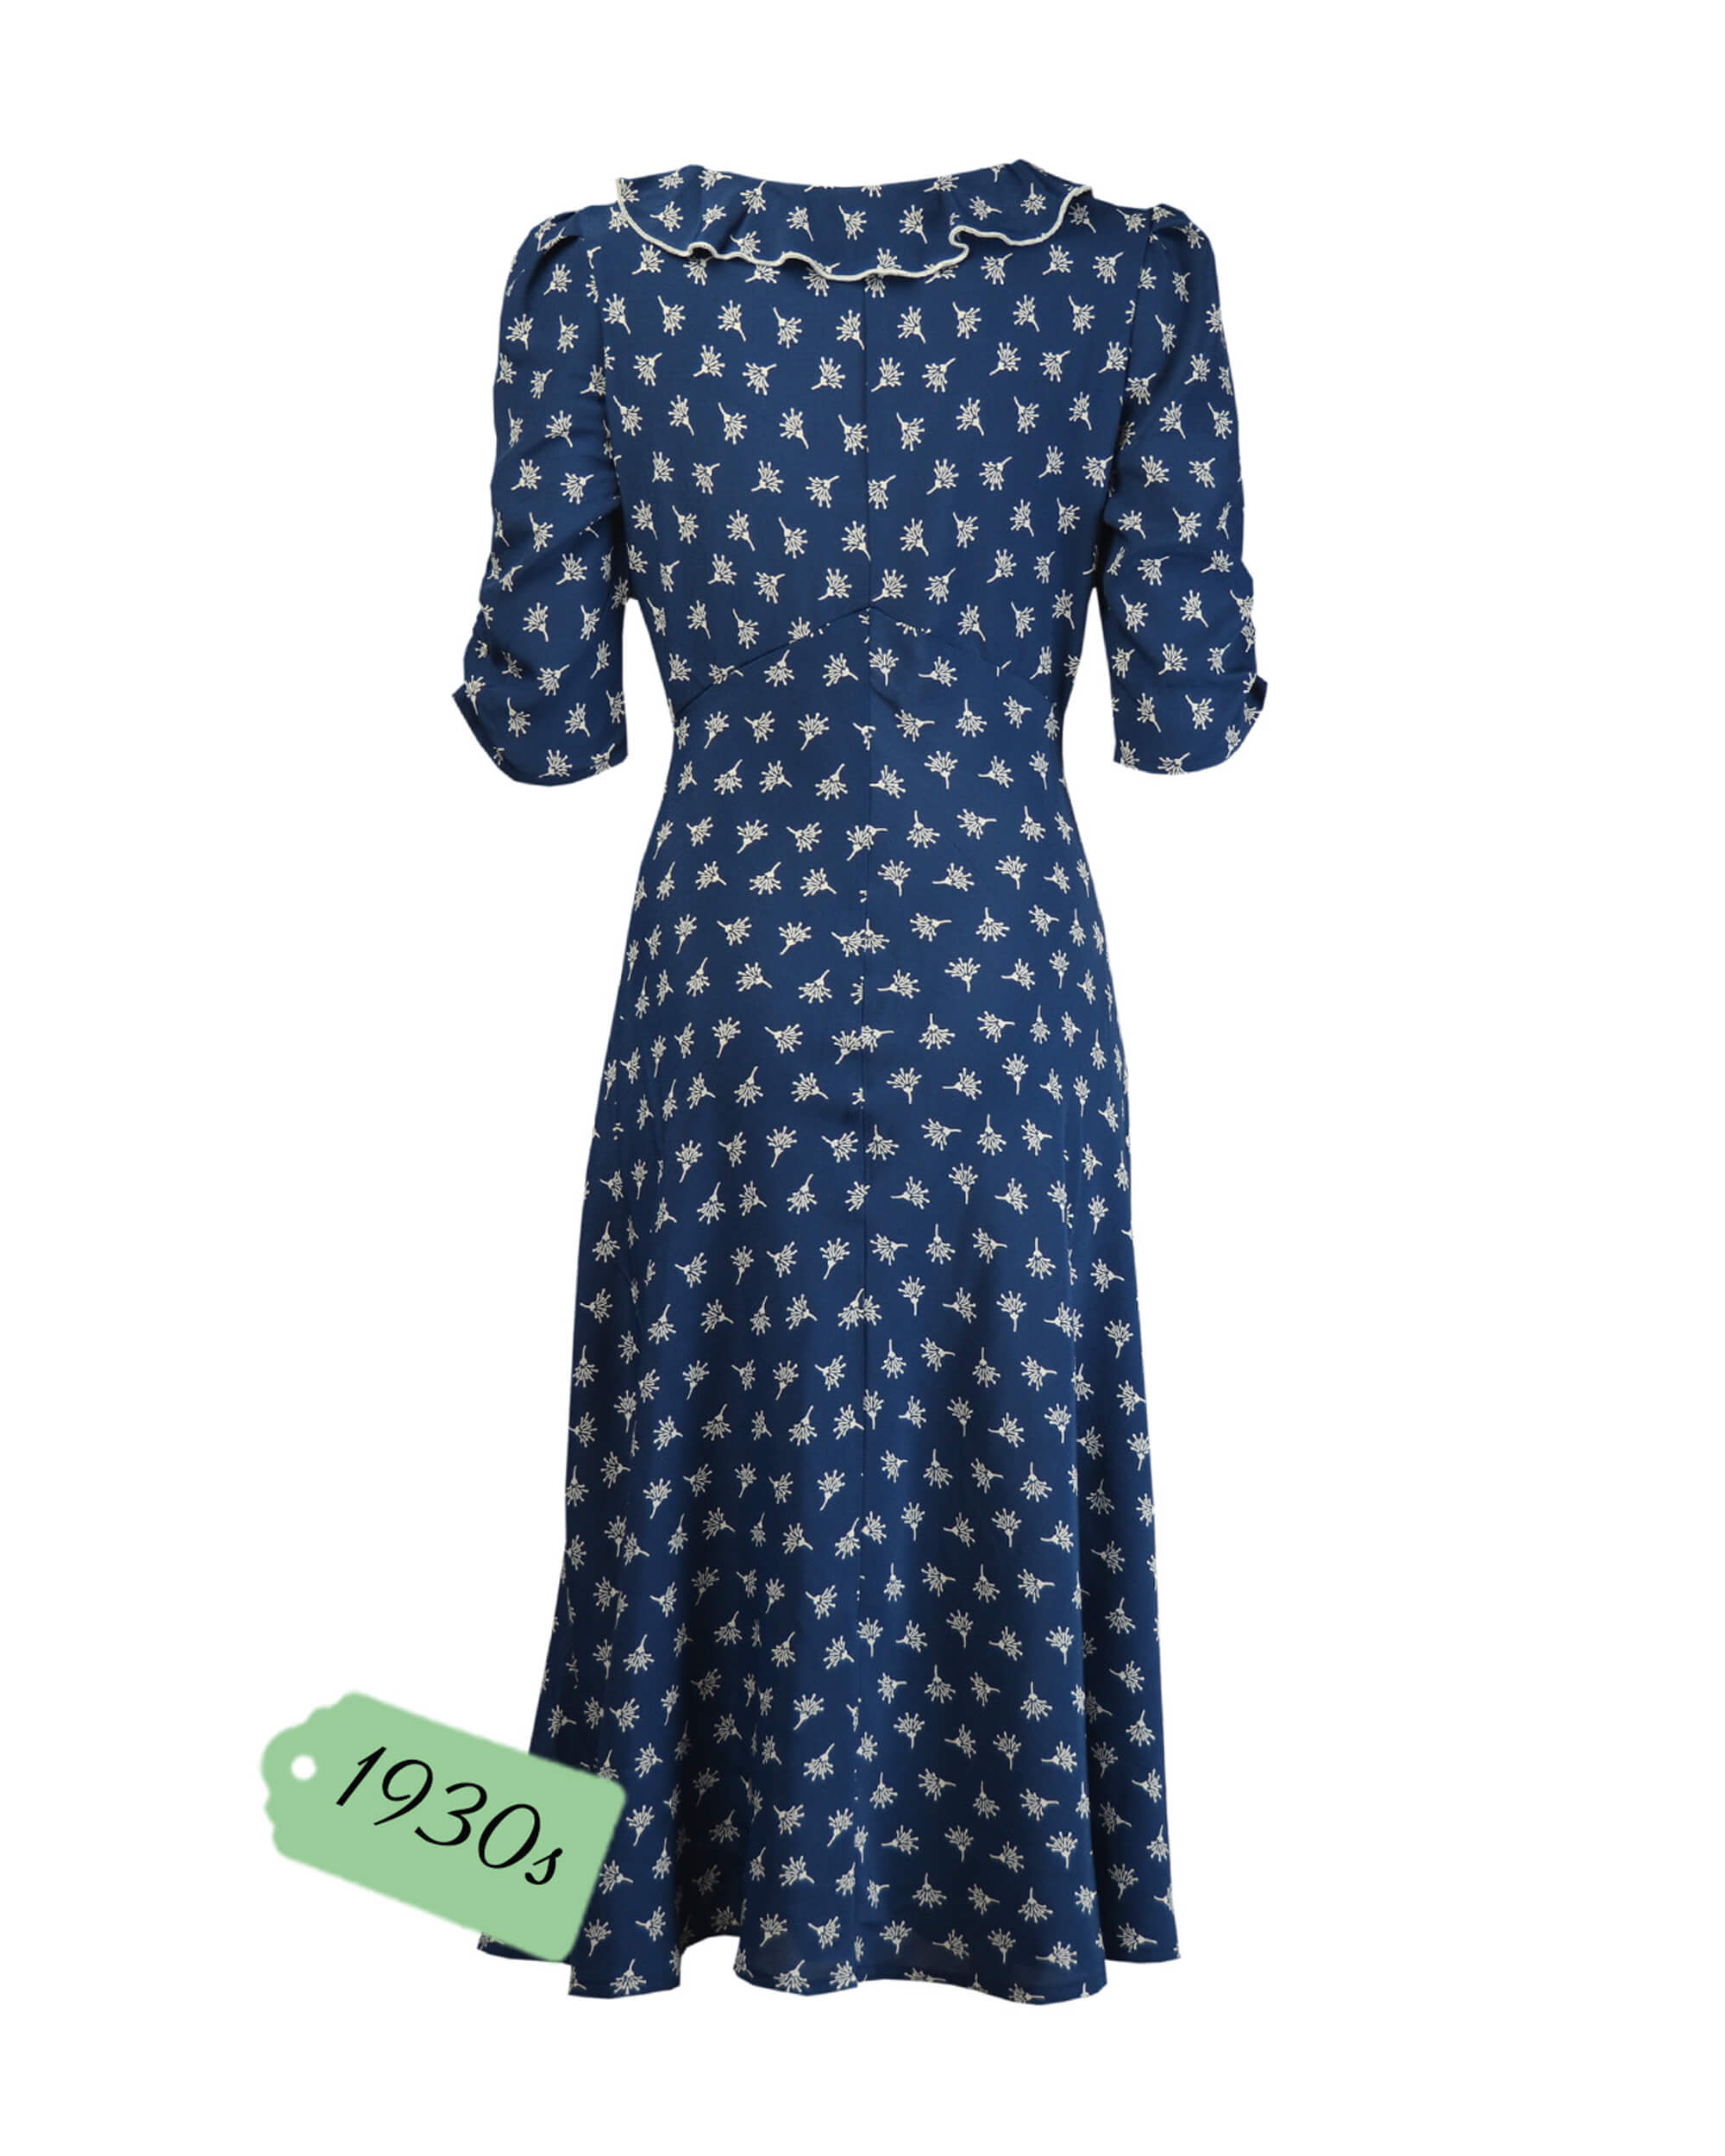 30s Cora Bias Cut Dress - Wish Print